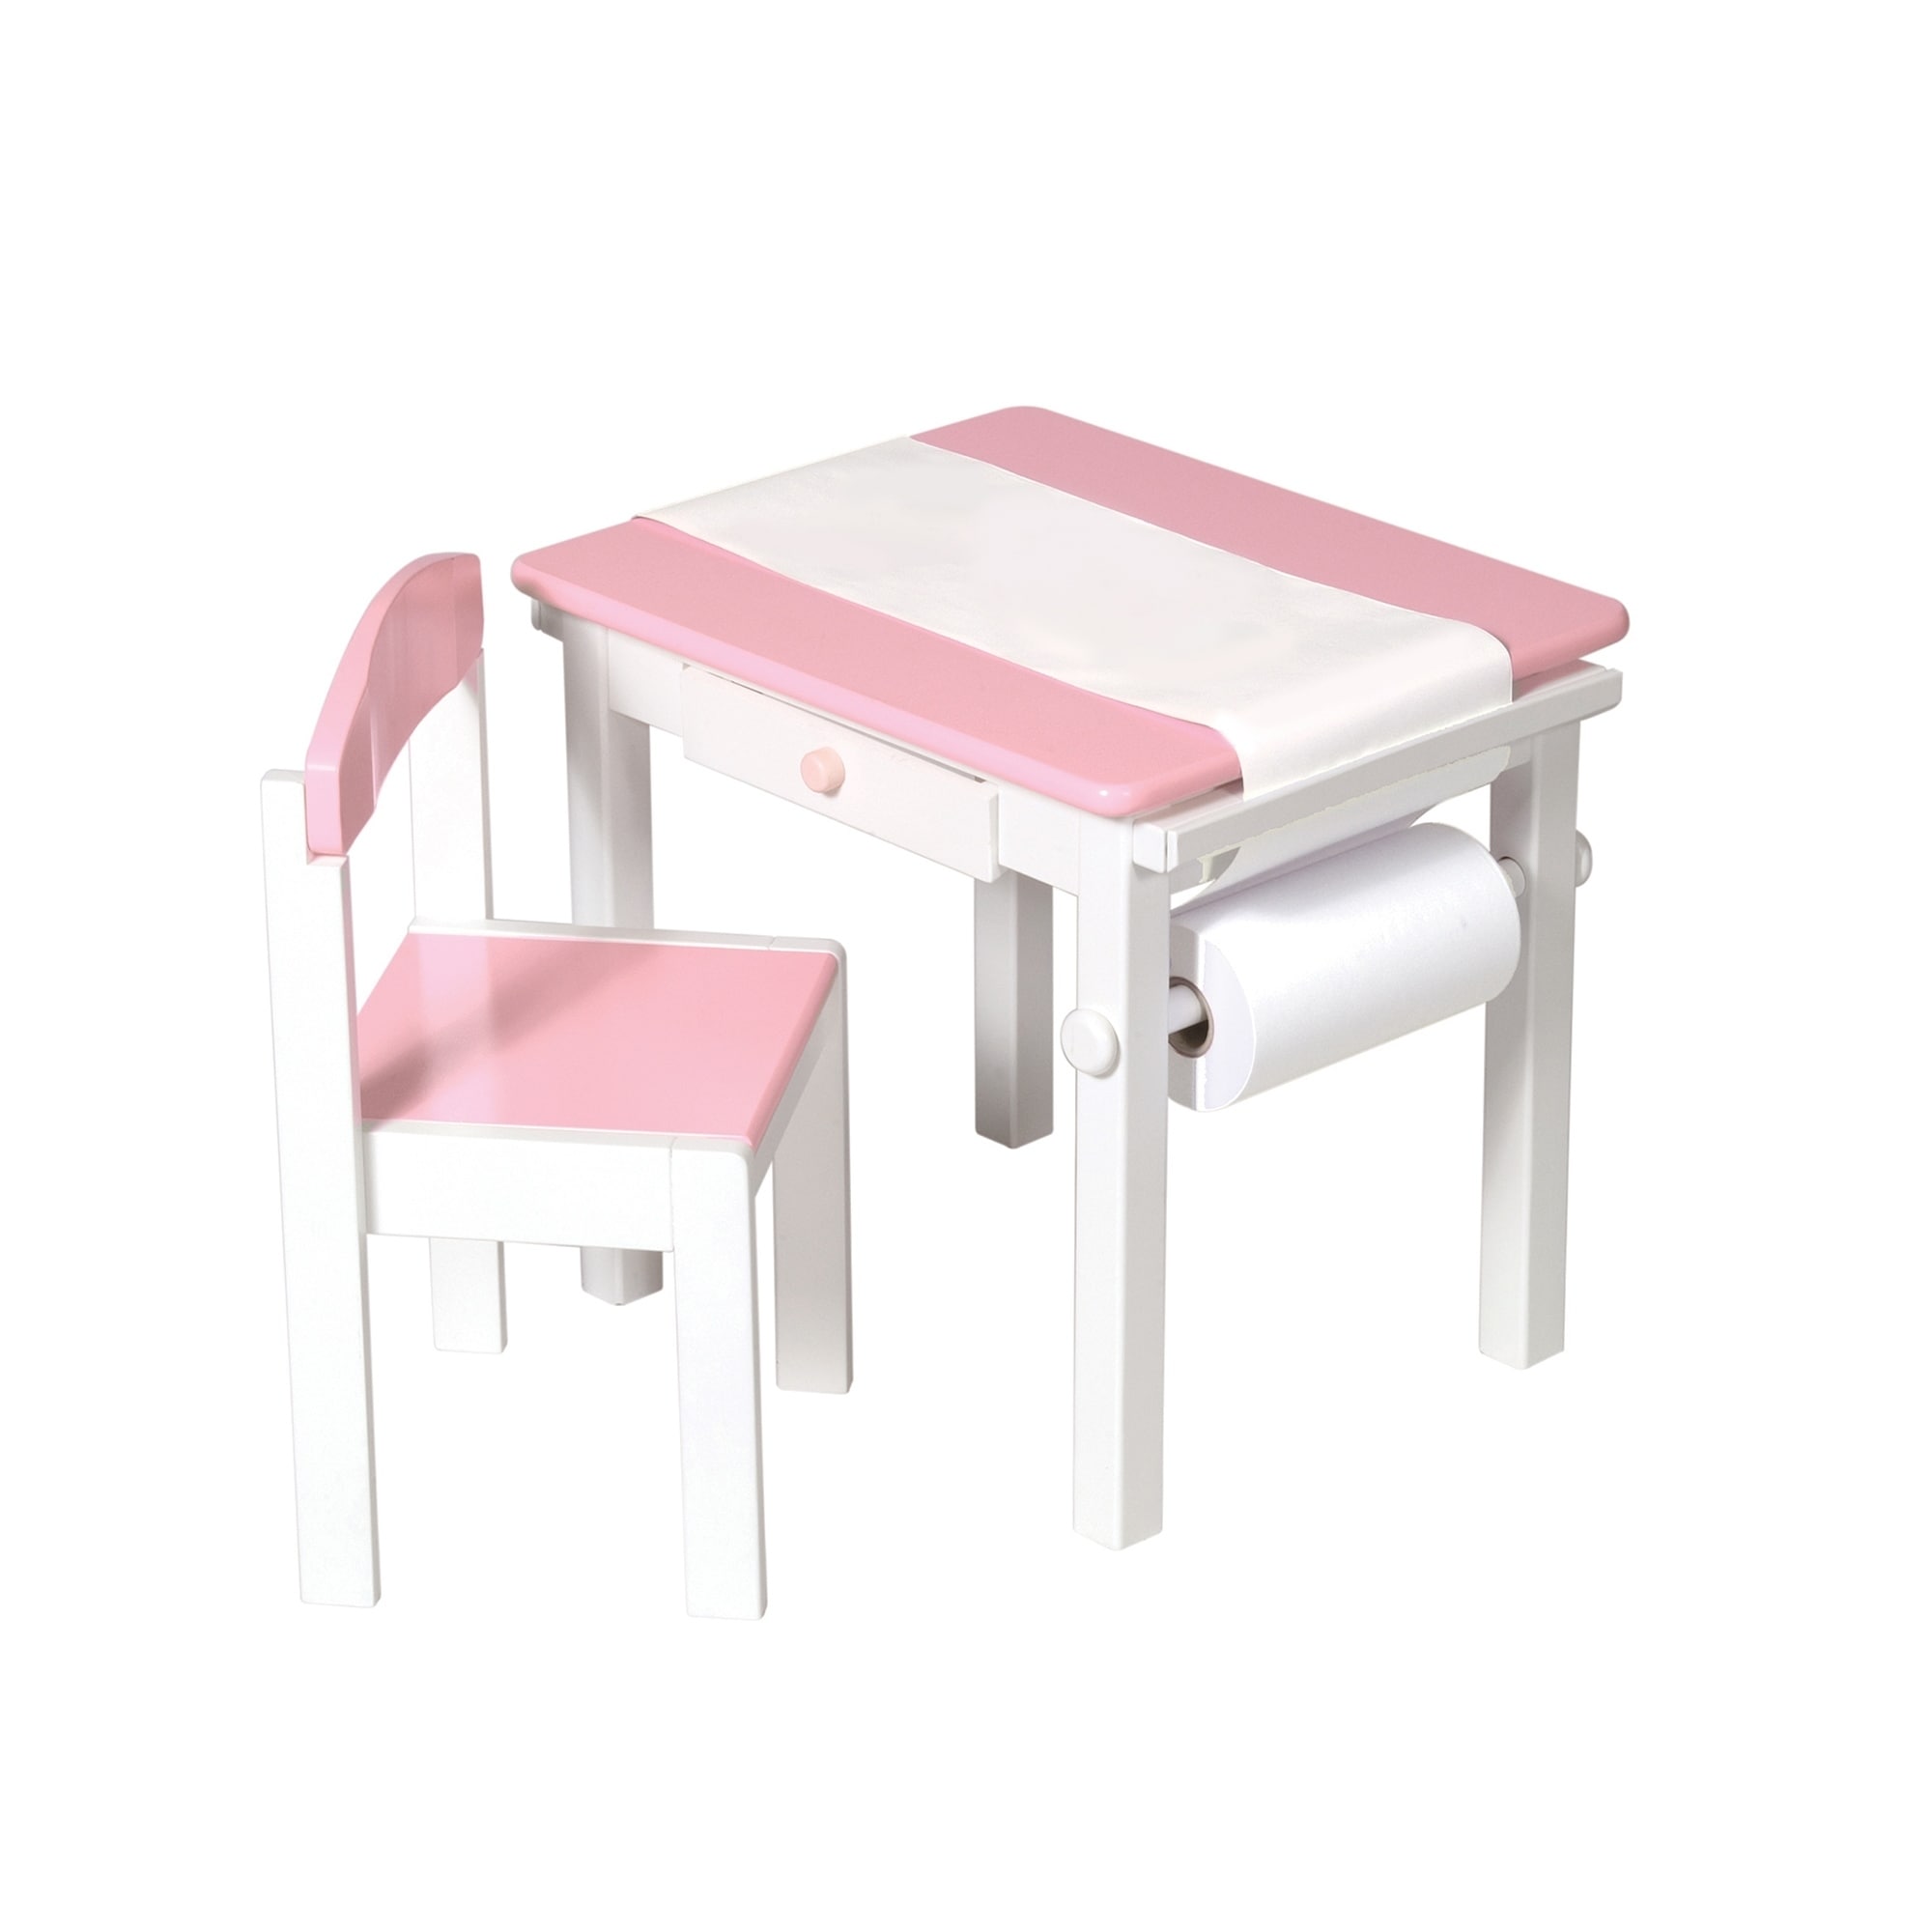 Shop Guidecraft Pink Art Desk And Chair Set Overstock 9064521